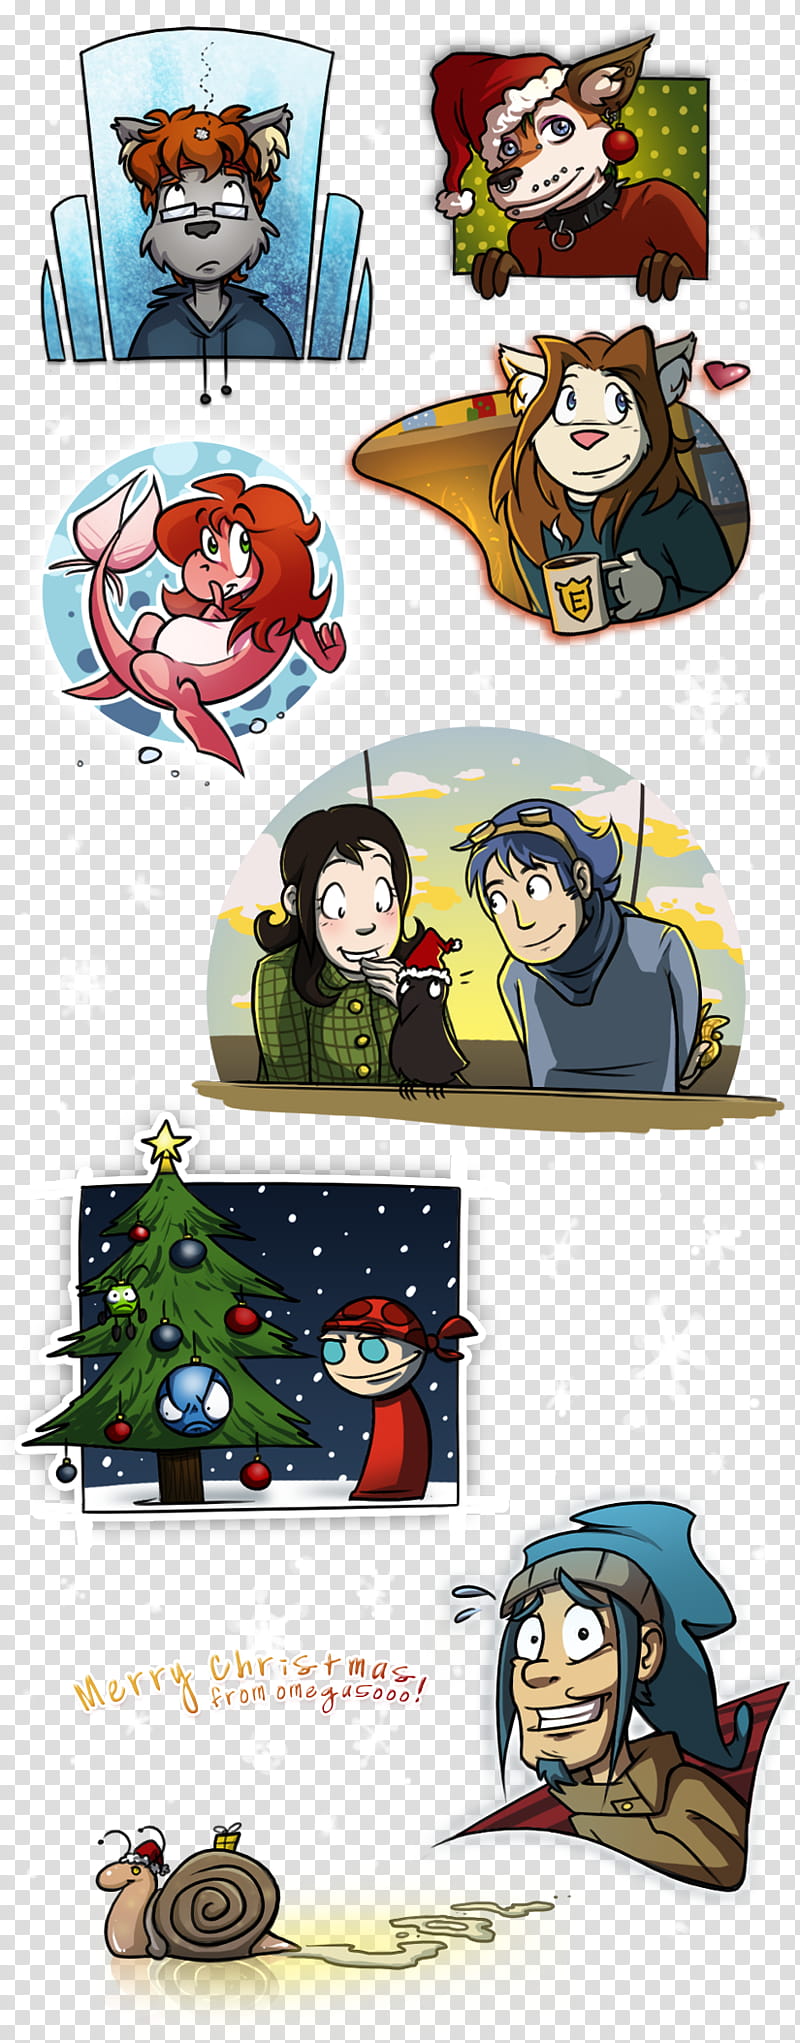 Last Minute Christmas Doodles, memes transparent background PNG clipart